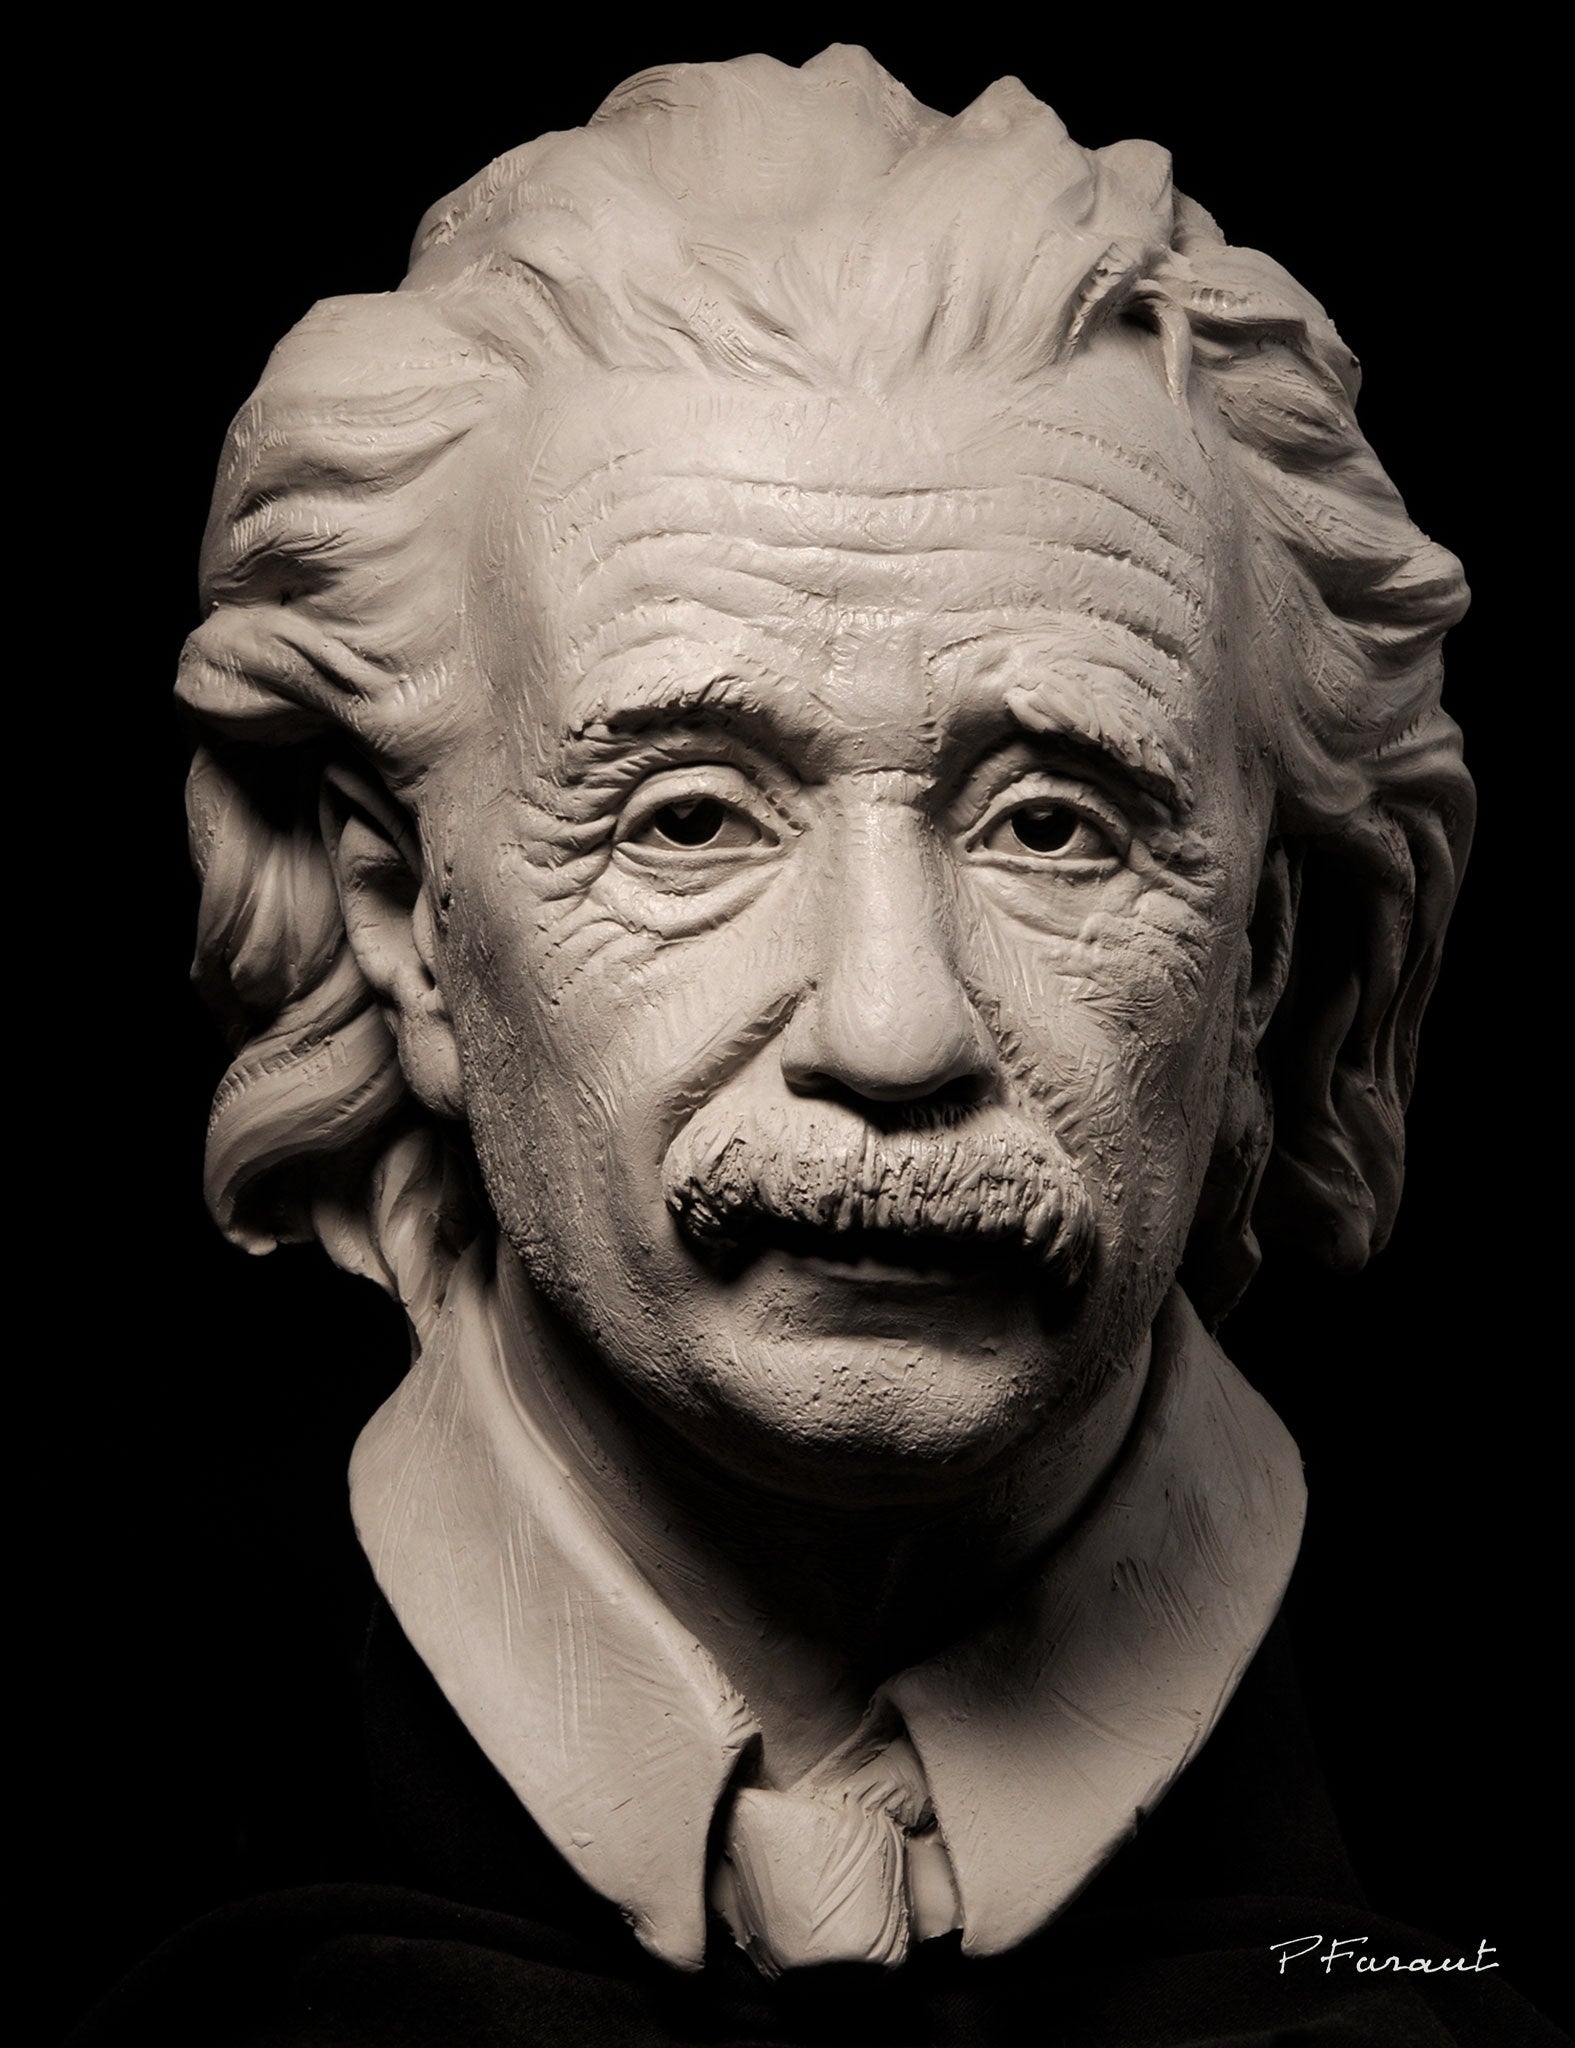 Albert Einstein clay portrait bust by Philippe Faraut